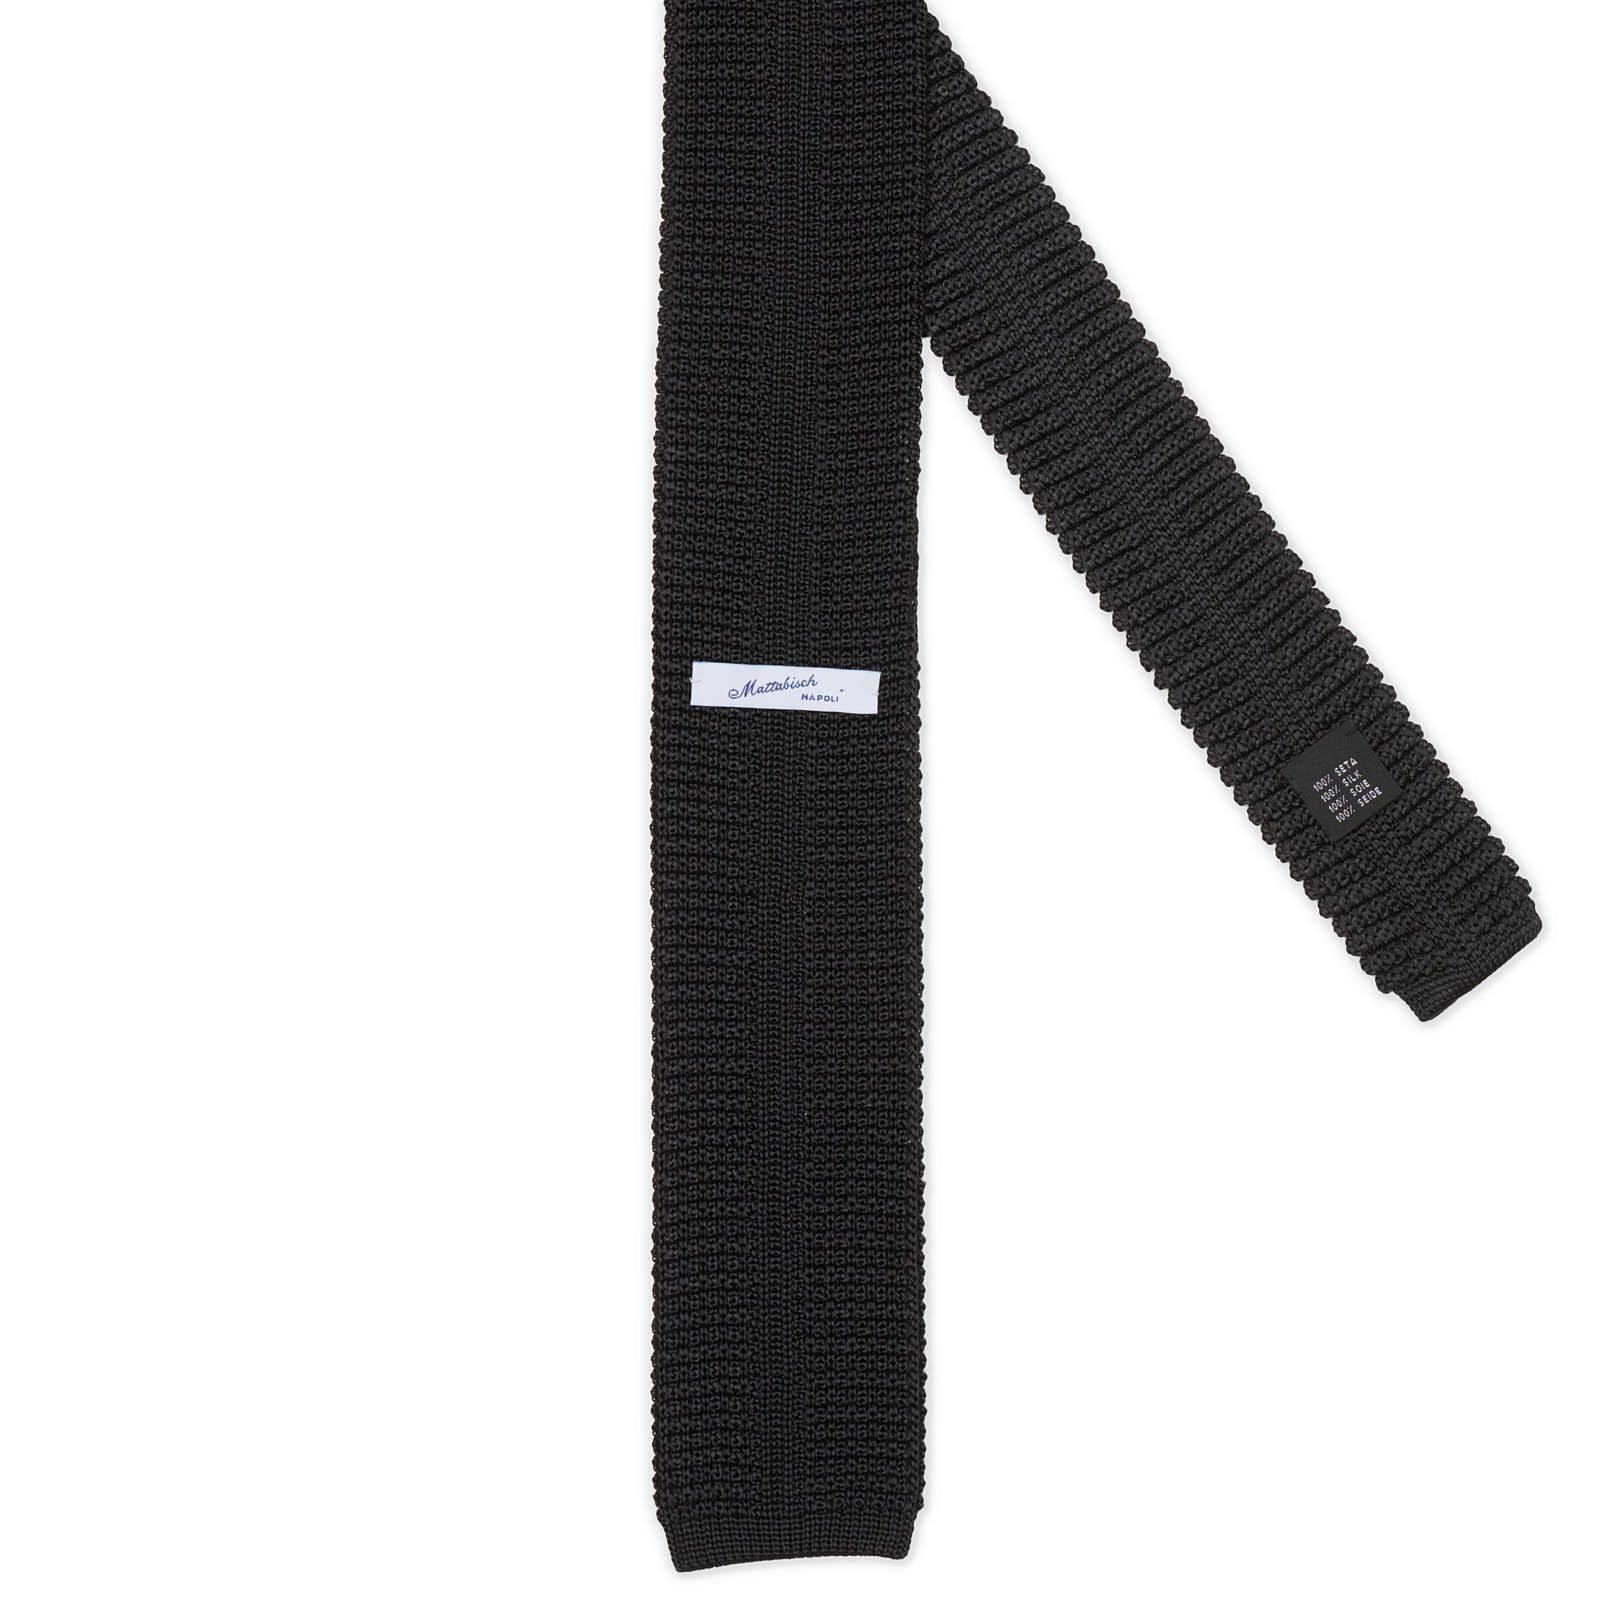 MATTABISCH Black Silk Knit Tie NEW